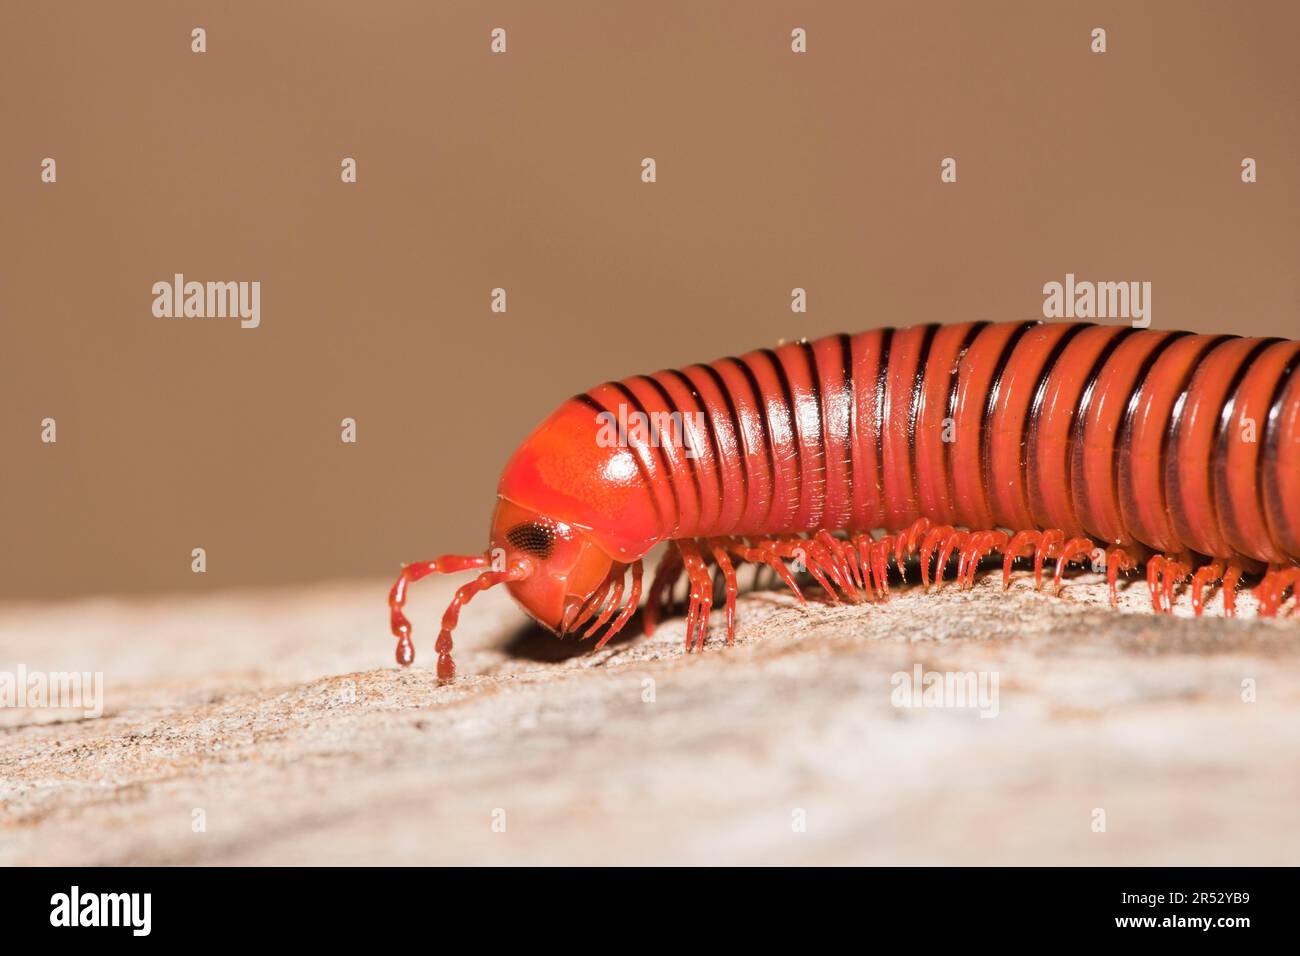 Worm-Like Millipedes, Umfolozi National Park, South Africa (Spirostreptida) Stock Photo